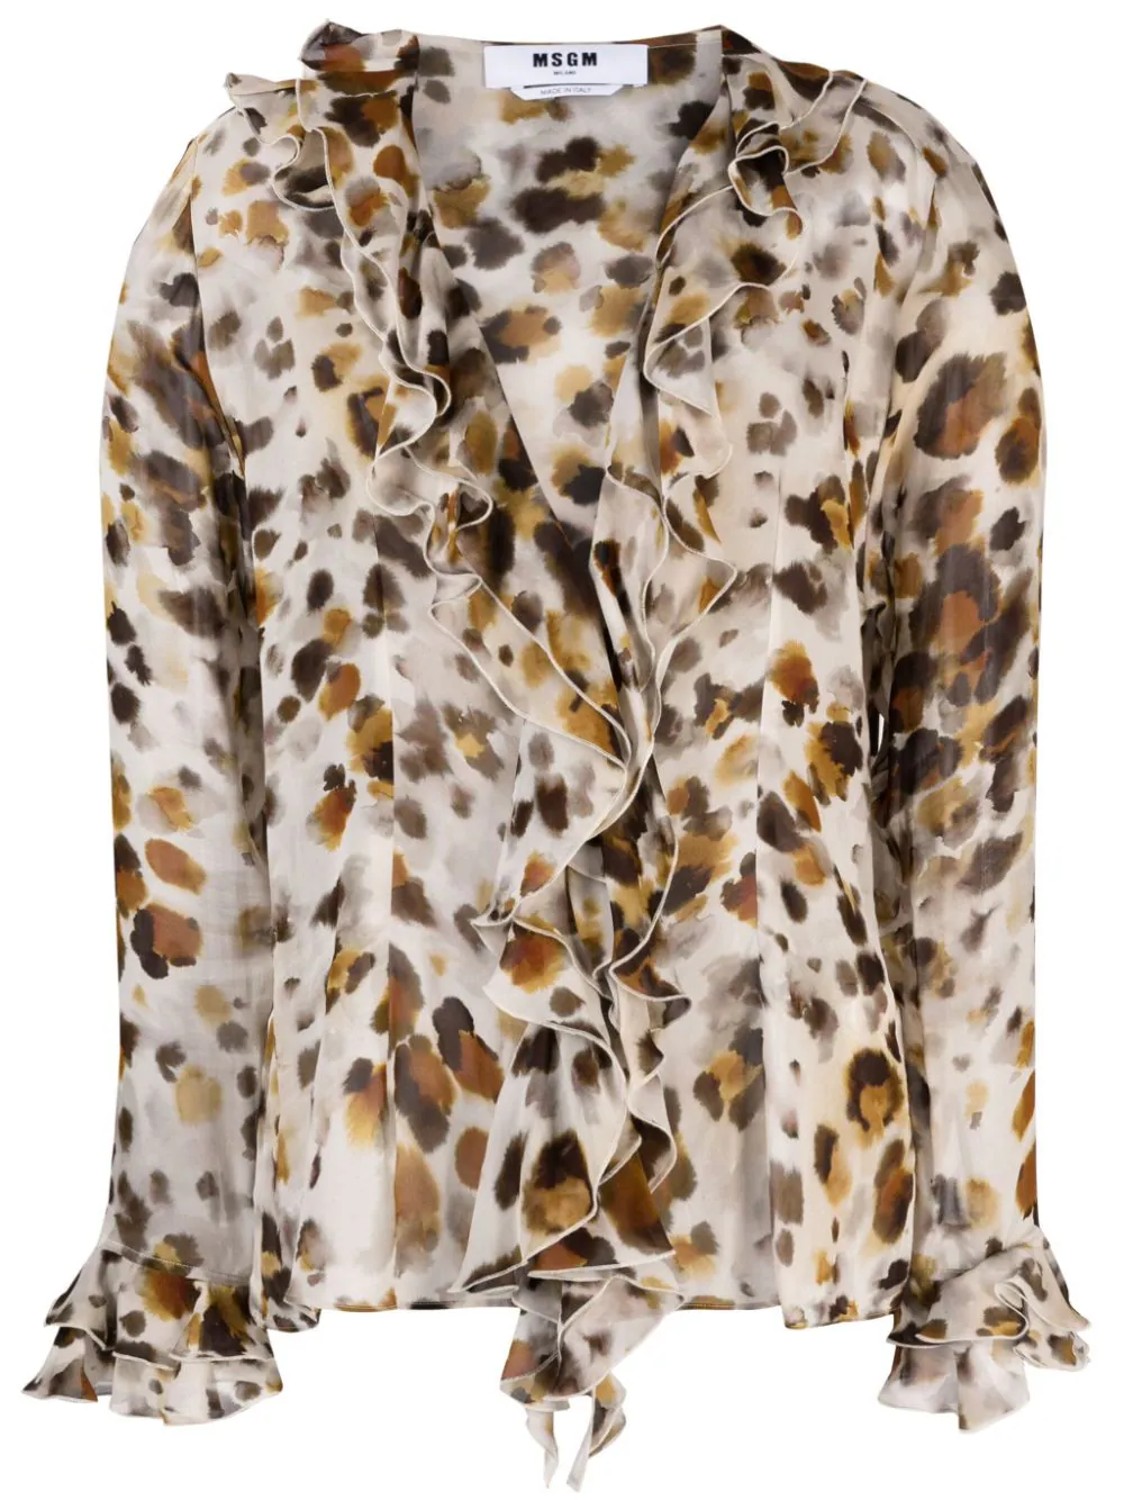 shop MSGM  Camicie: Camicie MSGM, blusa con rouches in georgette, stampa water leopard, manica lunga, scollo a V, fit regolare.

Composizione: 100% viscosa. number 2678